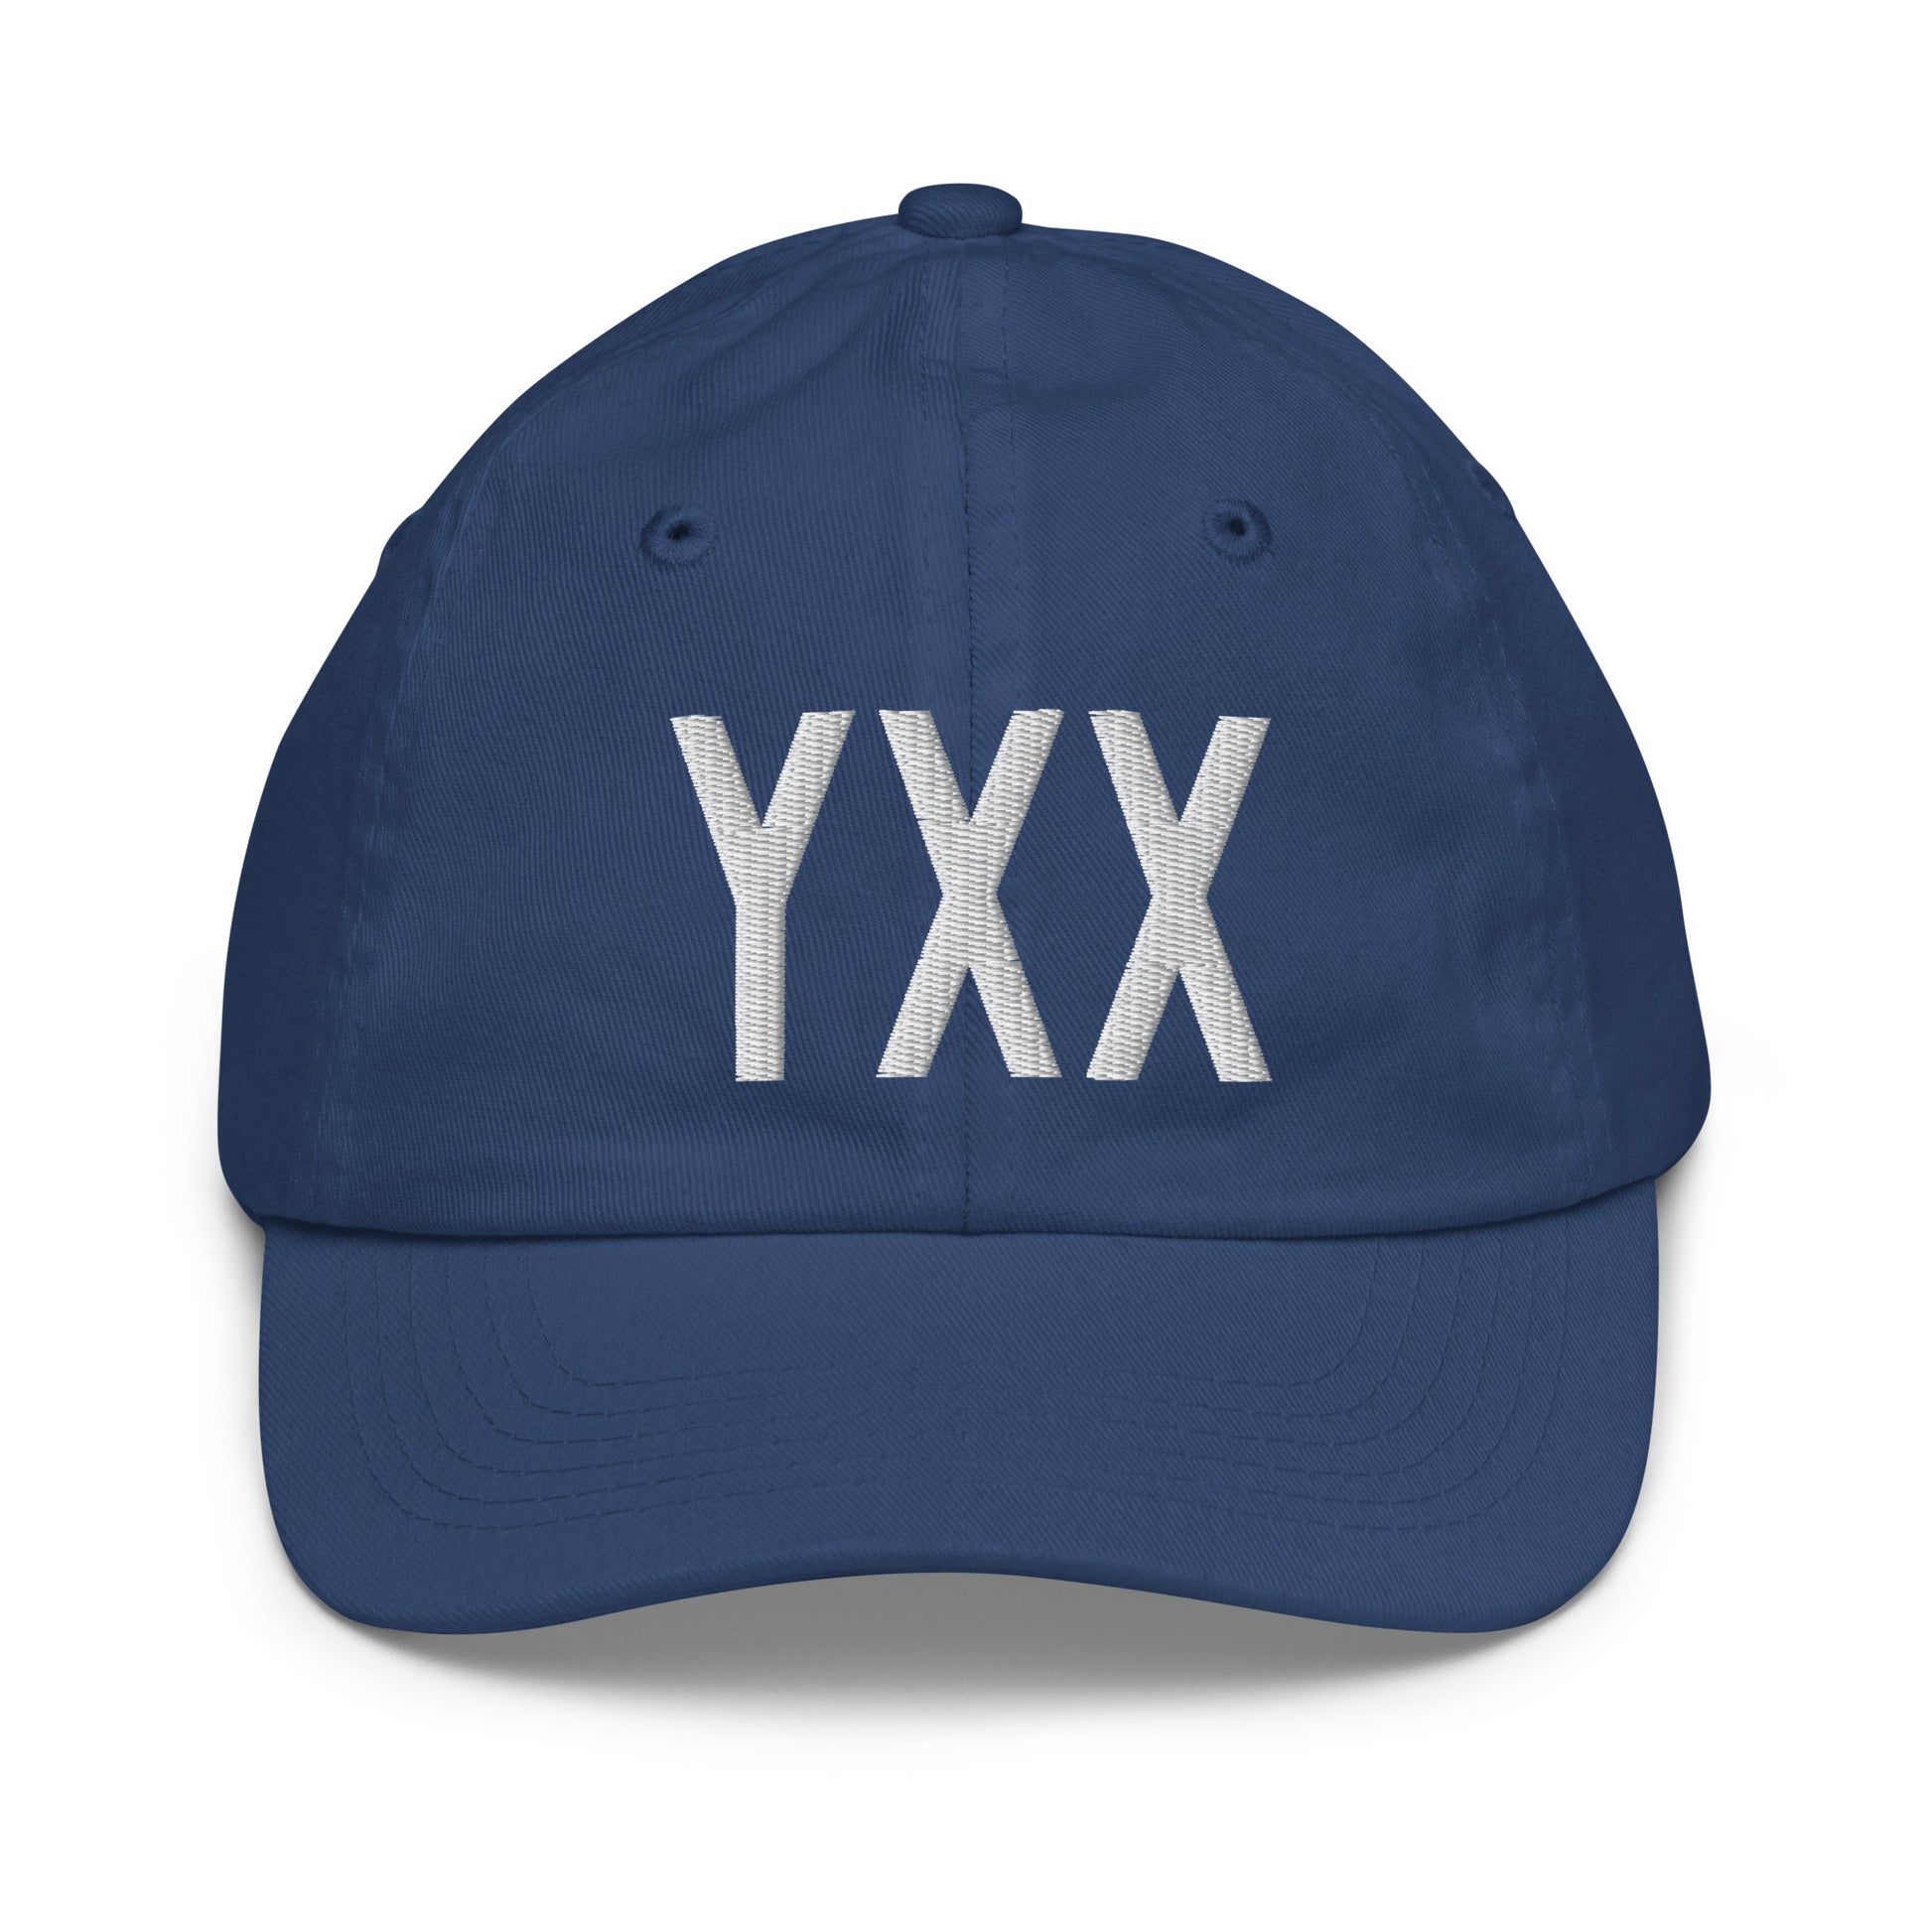 Airport Code Kid's Baseball Cap - White • YXX Abbotsford • YHM Designs - Image 20